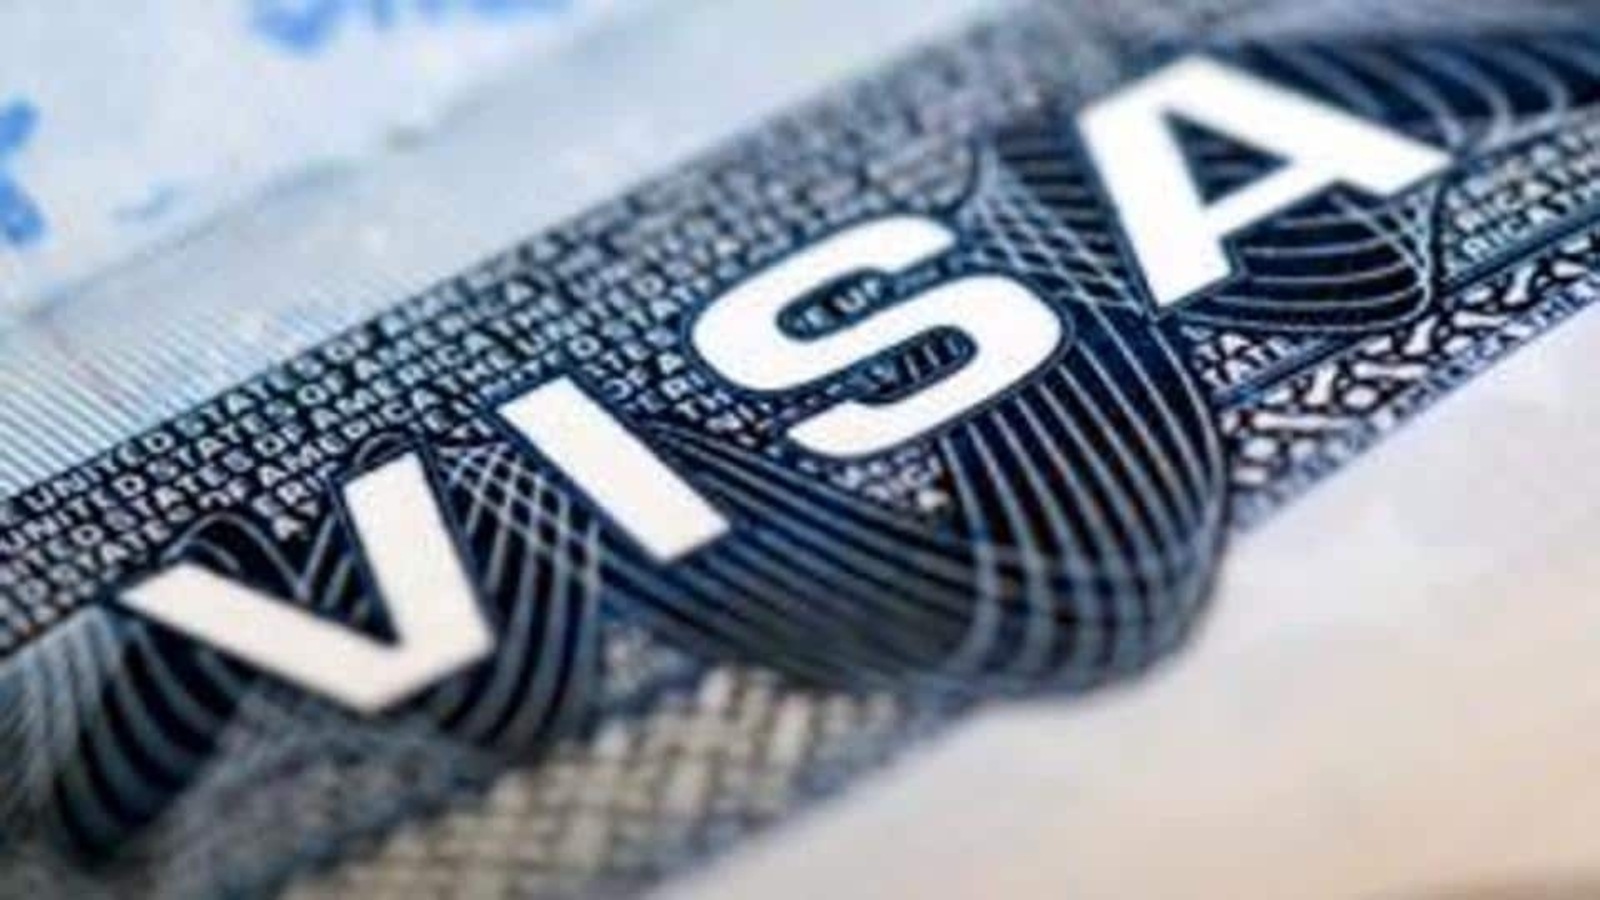 Estados Unidos alcanza el límite de 65,000 visas H-1B para 2022: Servicios de Inmigración de EE. UU. |  noticias del mundo